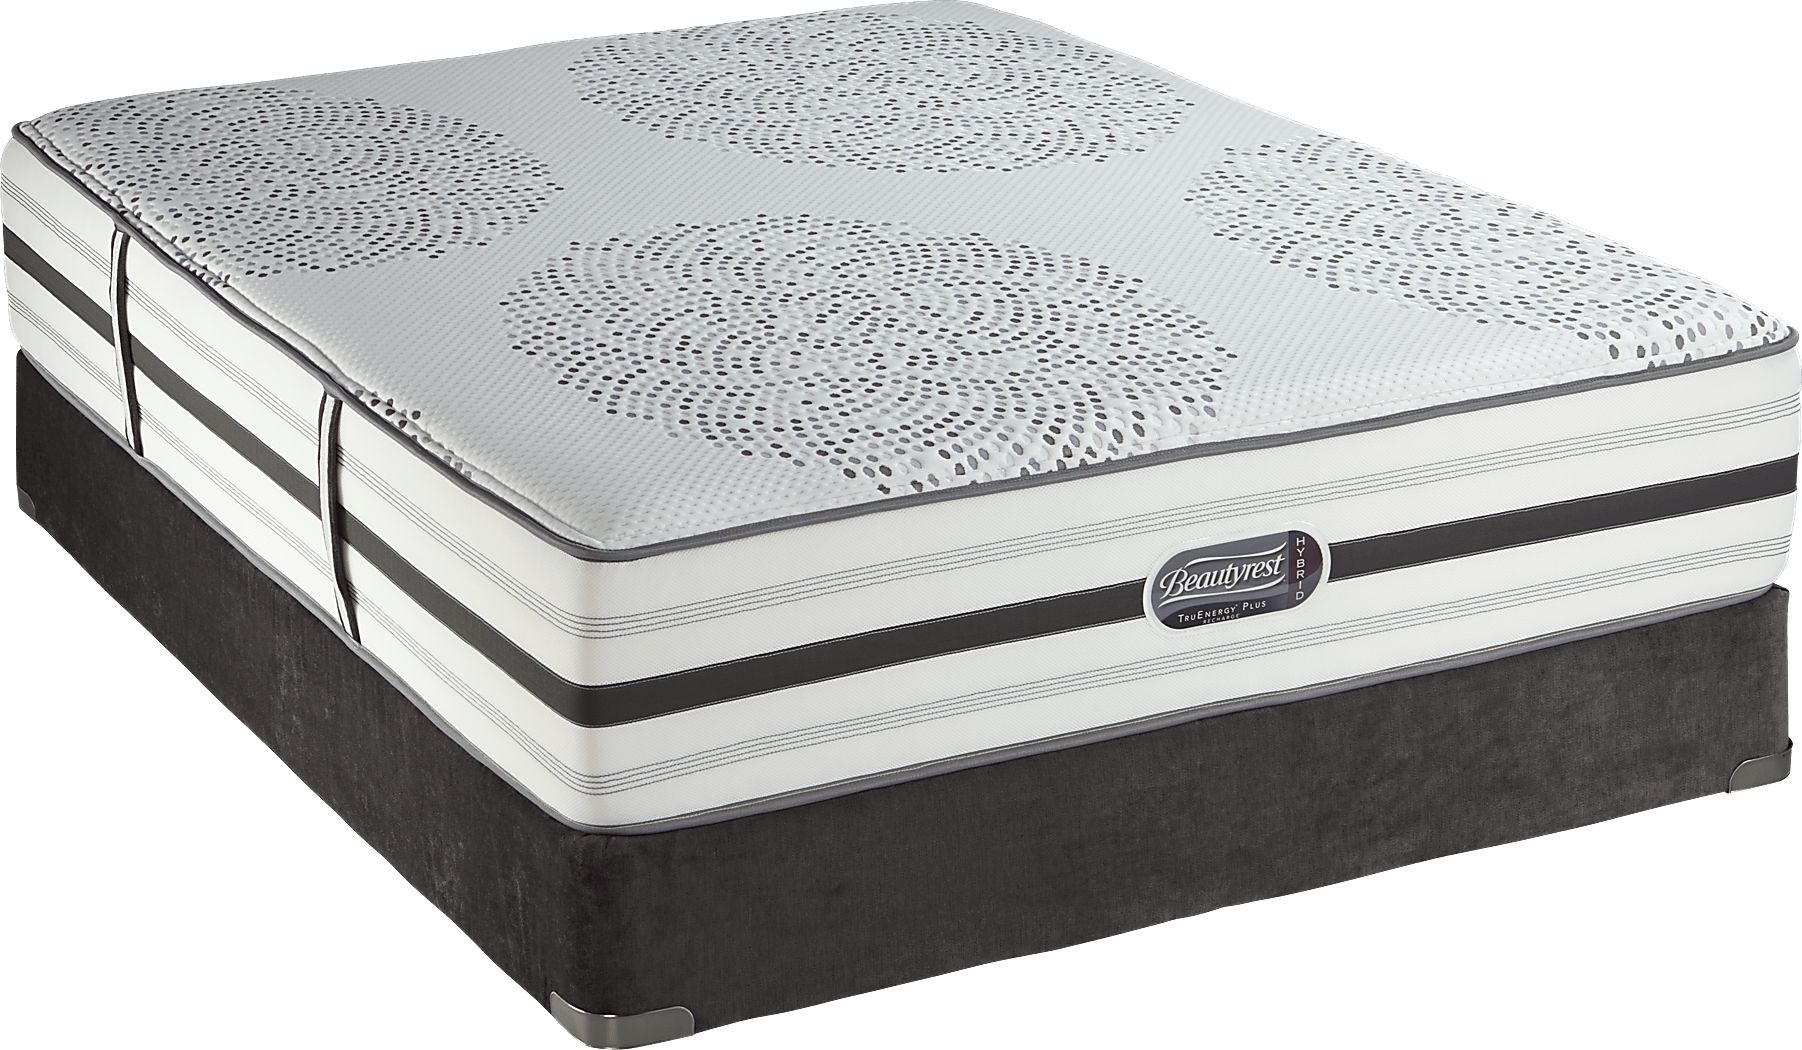 beautyrest silver hidden ridge queen mattress set review